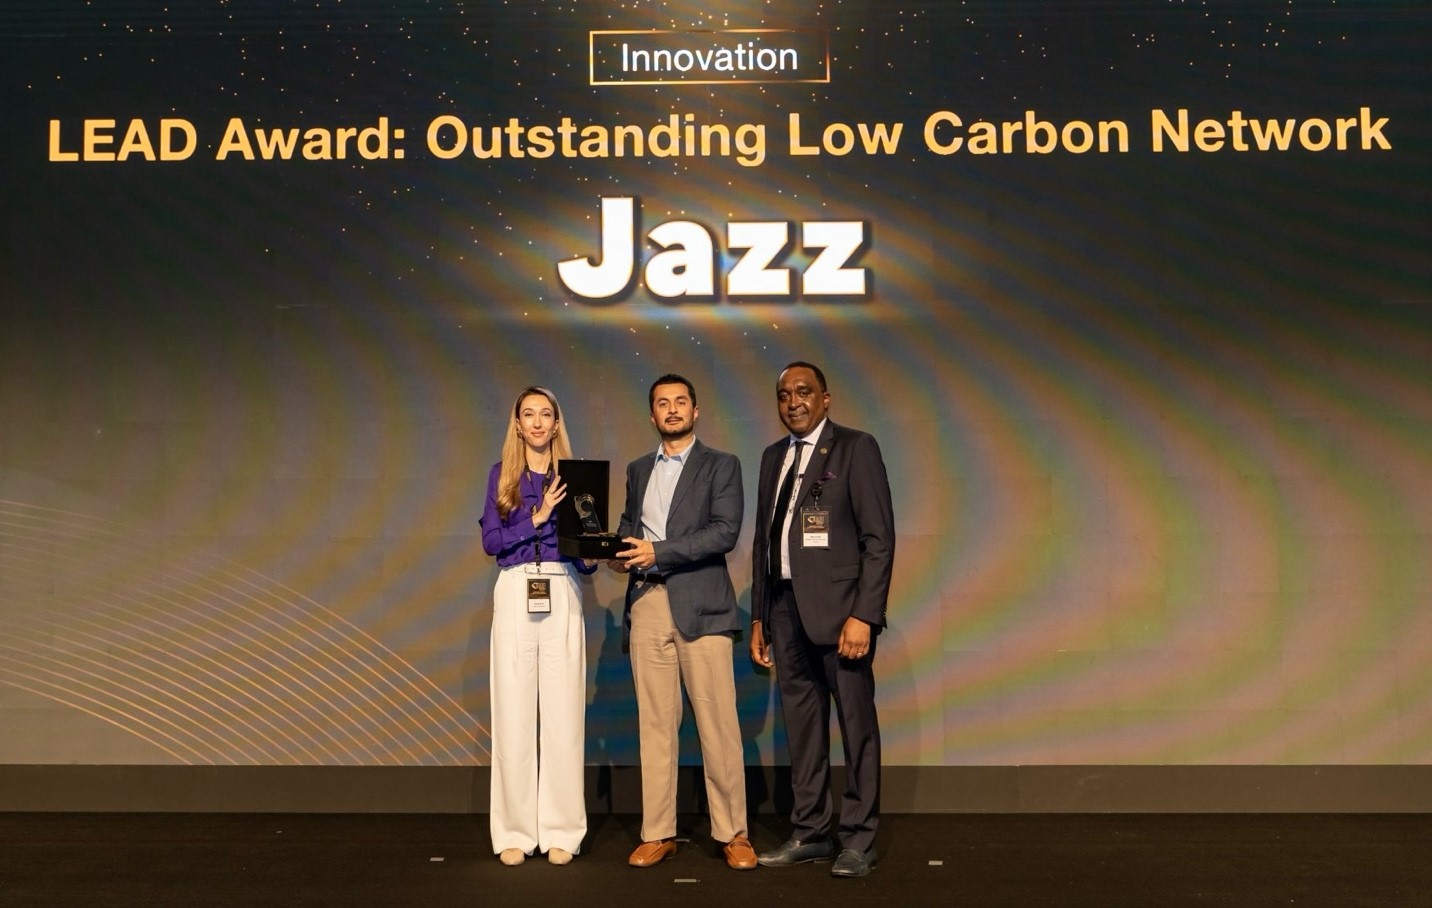 جاز نے دبئی میں سمینا ٹیلی کام ایوارڈز میں کم کاربن نیٹ ورک کے لیے اعلیٰ اعزاز حاصل کیا